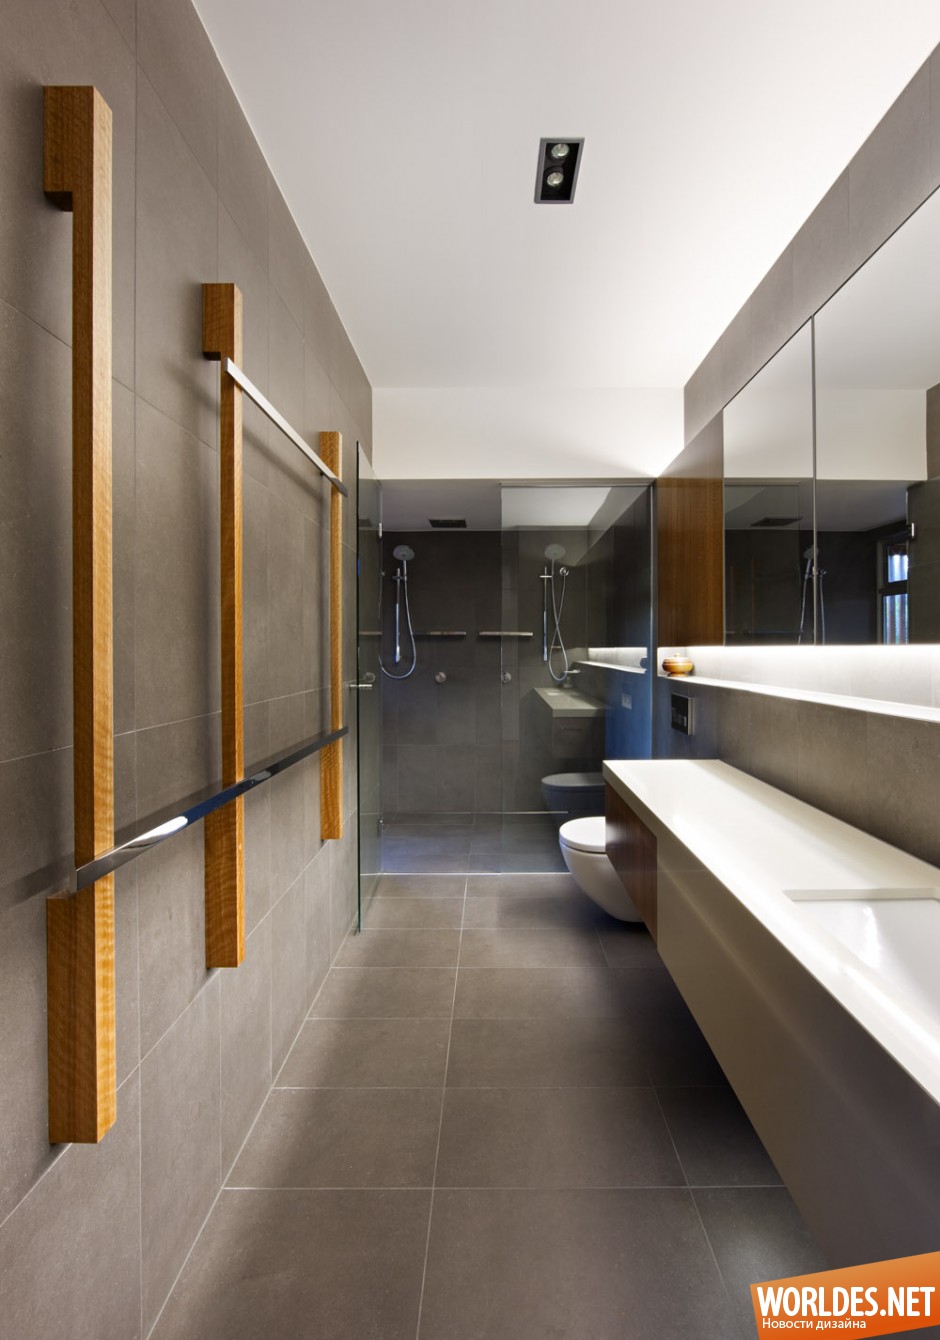 стильные ванные комнаты, стильная ванная комната фото, стильный дизайн ванной комнаты, современная ванная комната, фото современной ванной комнаты